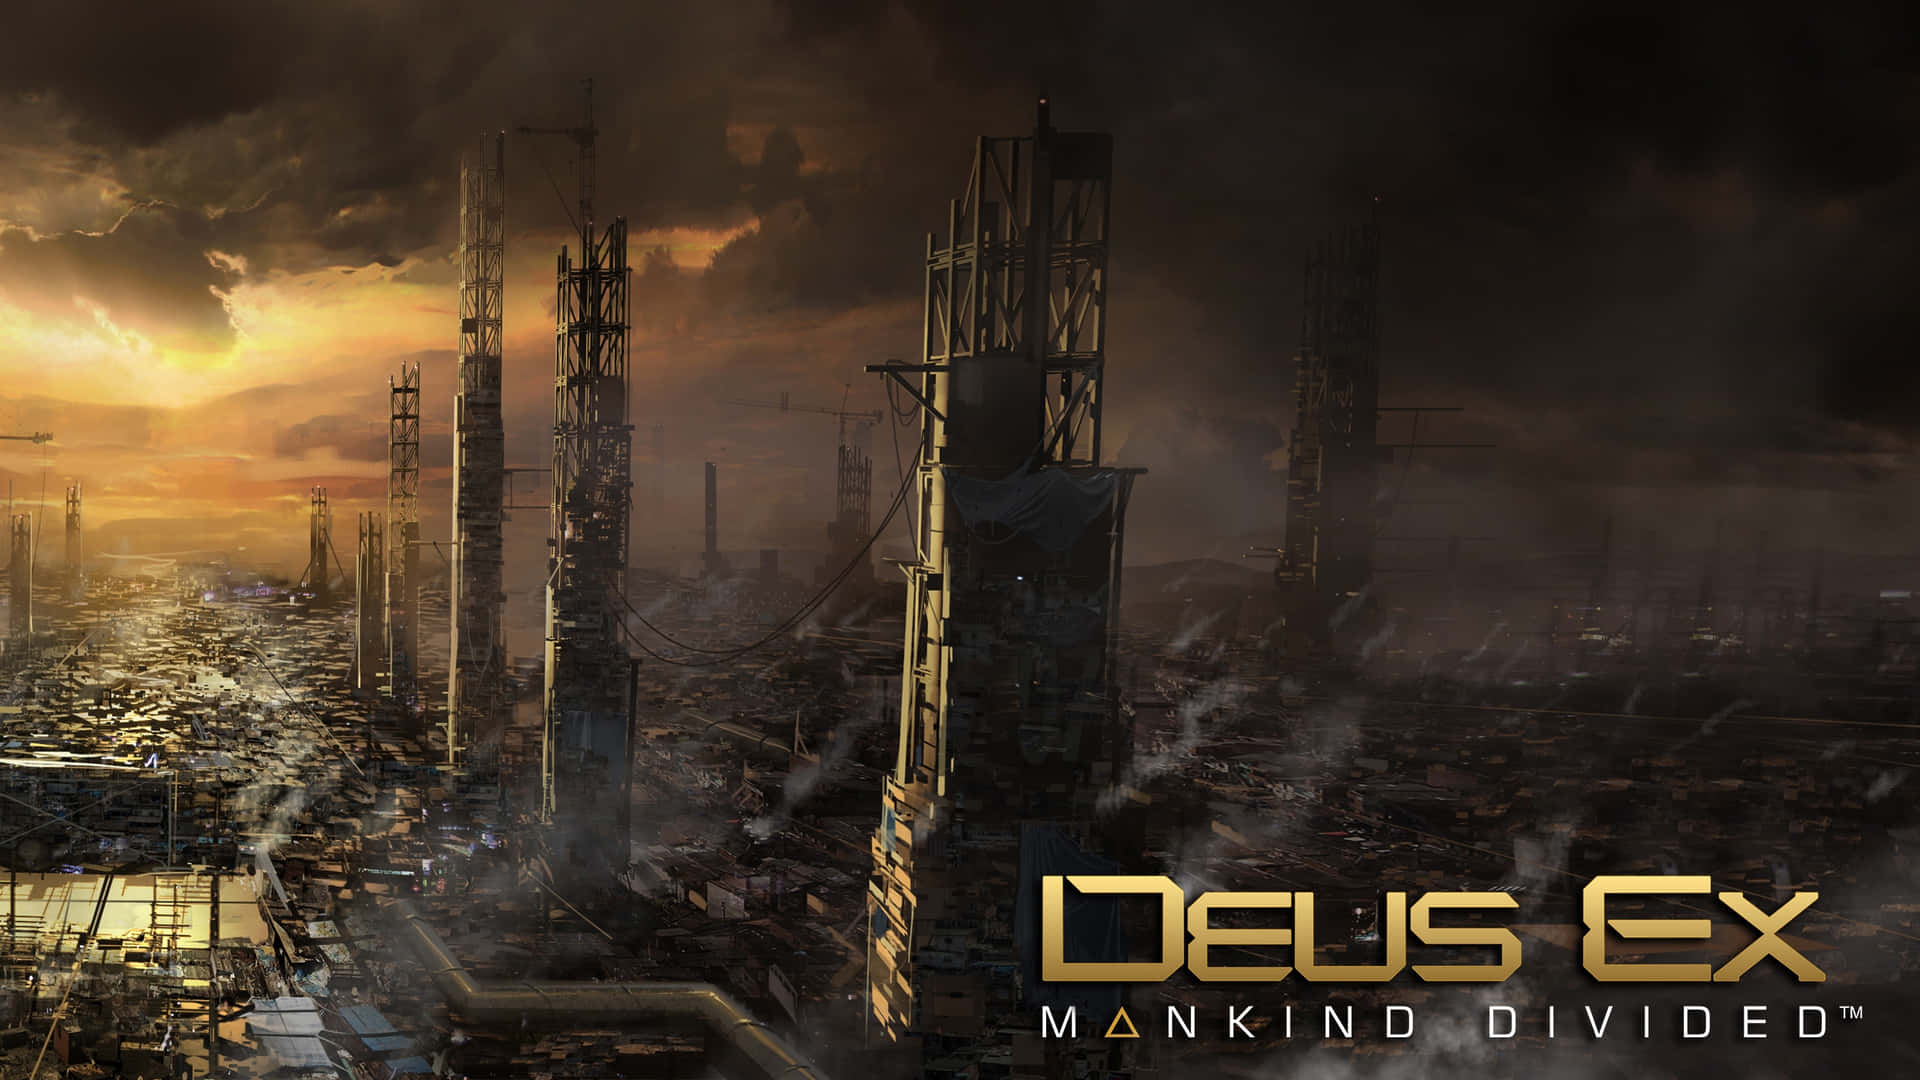 Mankinddivided - Dos Bandos, Una Humanidad Fondo de pantalla